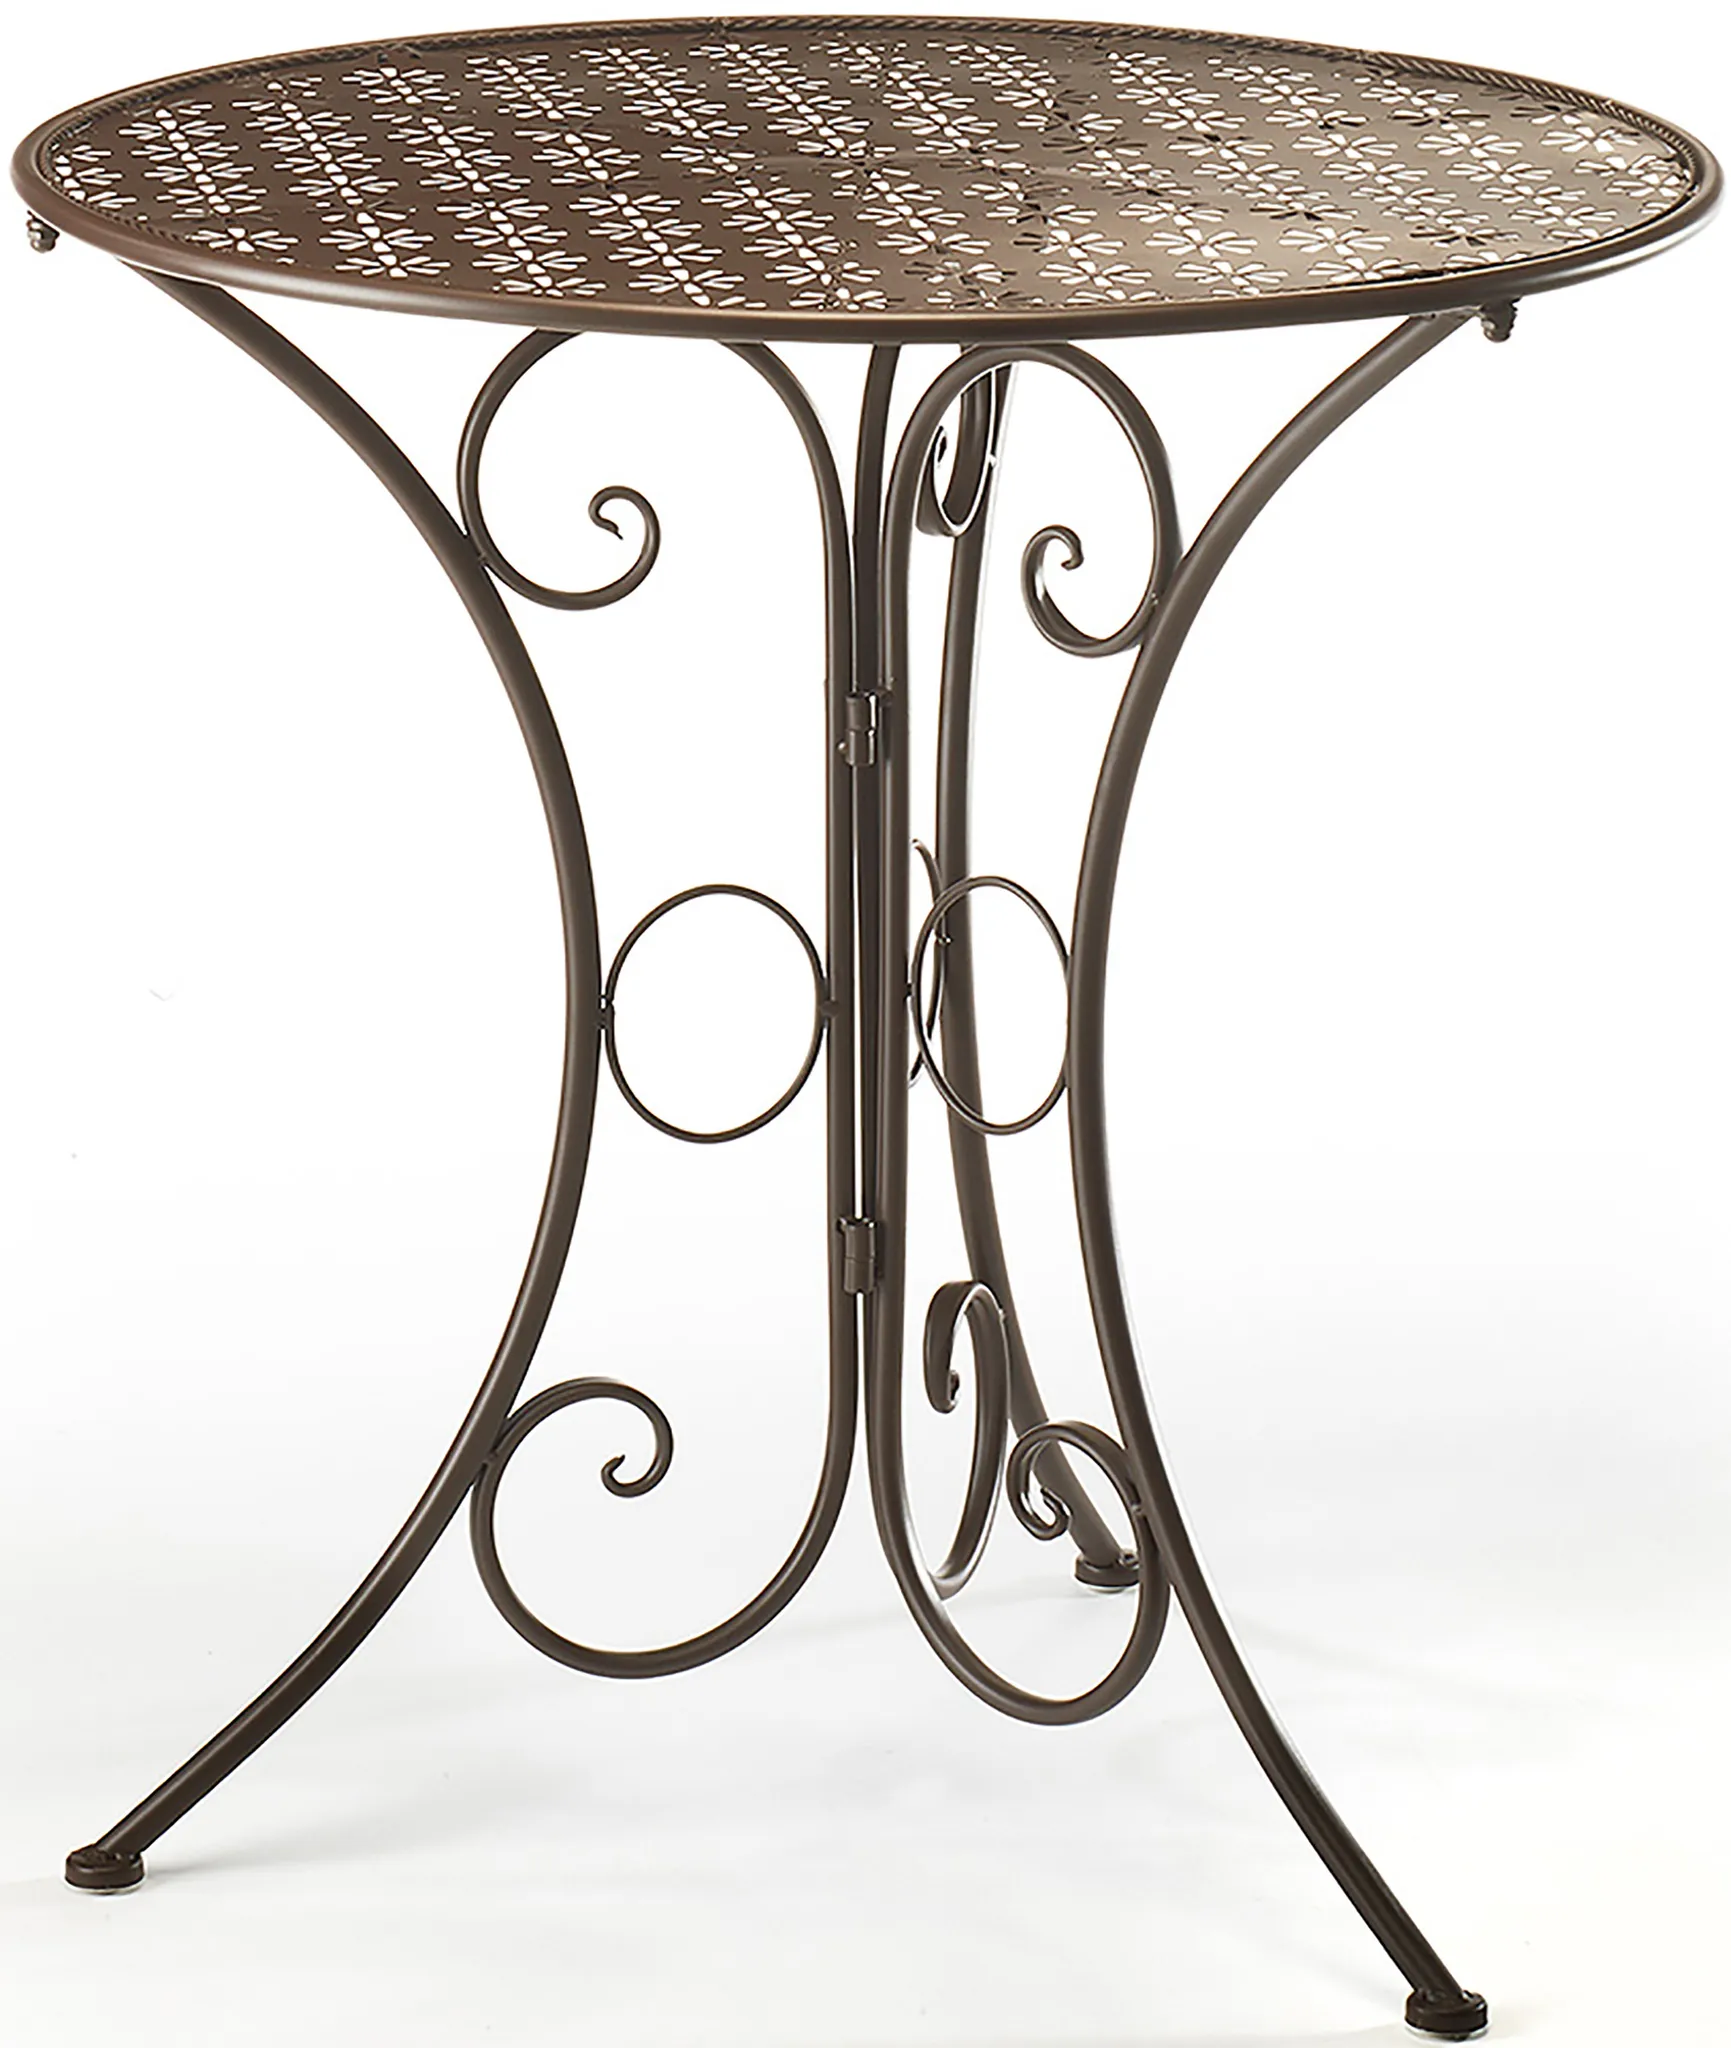 Tisch aus braun Metall Gartentisch 60cm